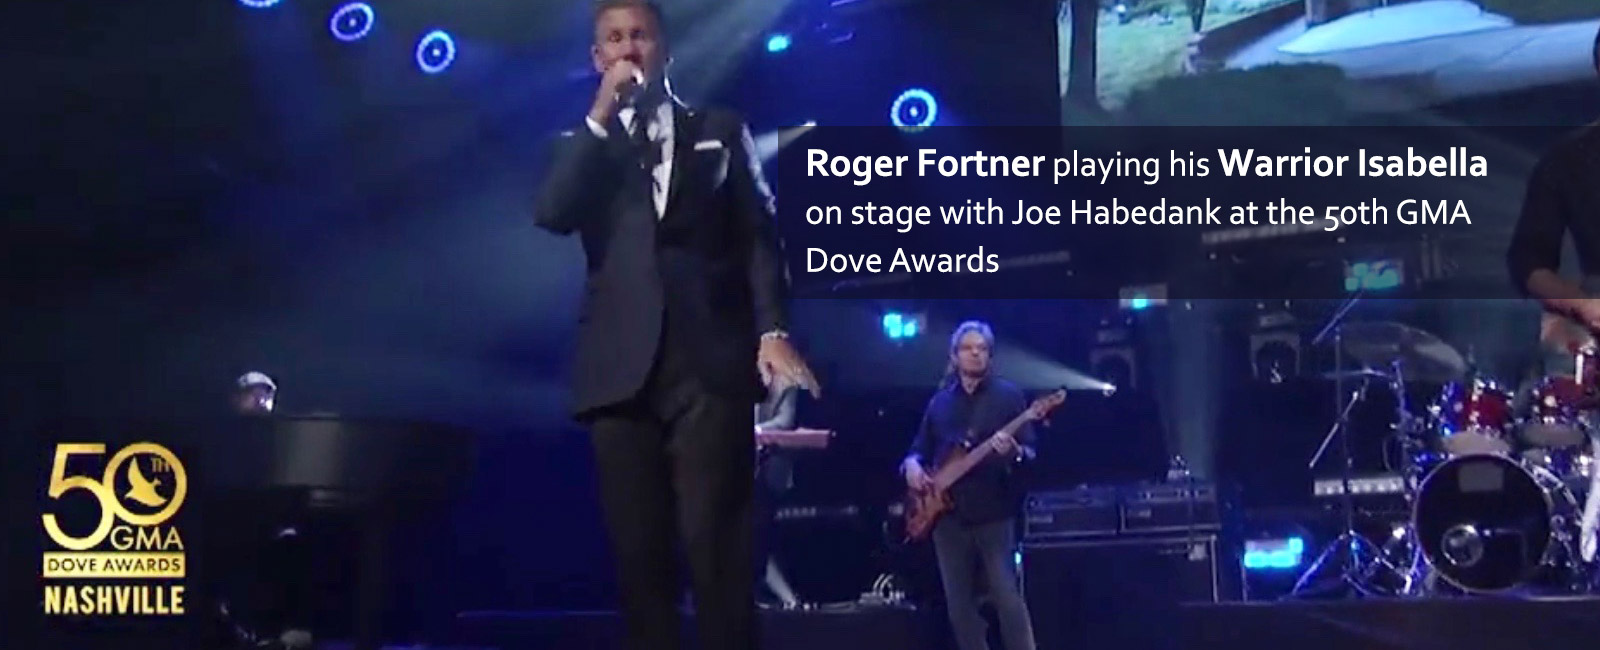 Joe Habedank - Isabella - singer Roger Fortner